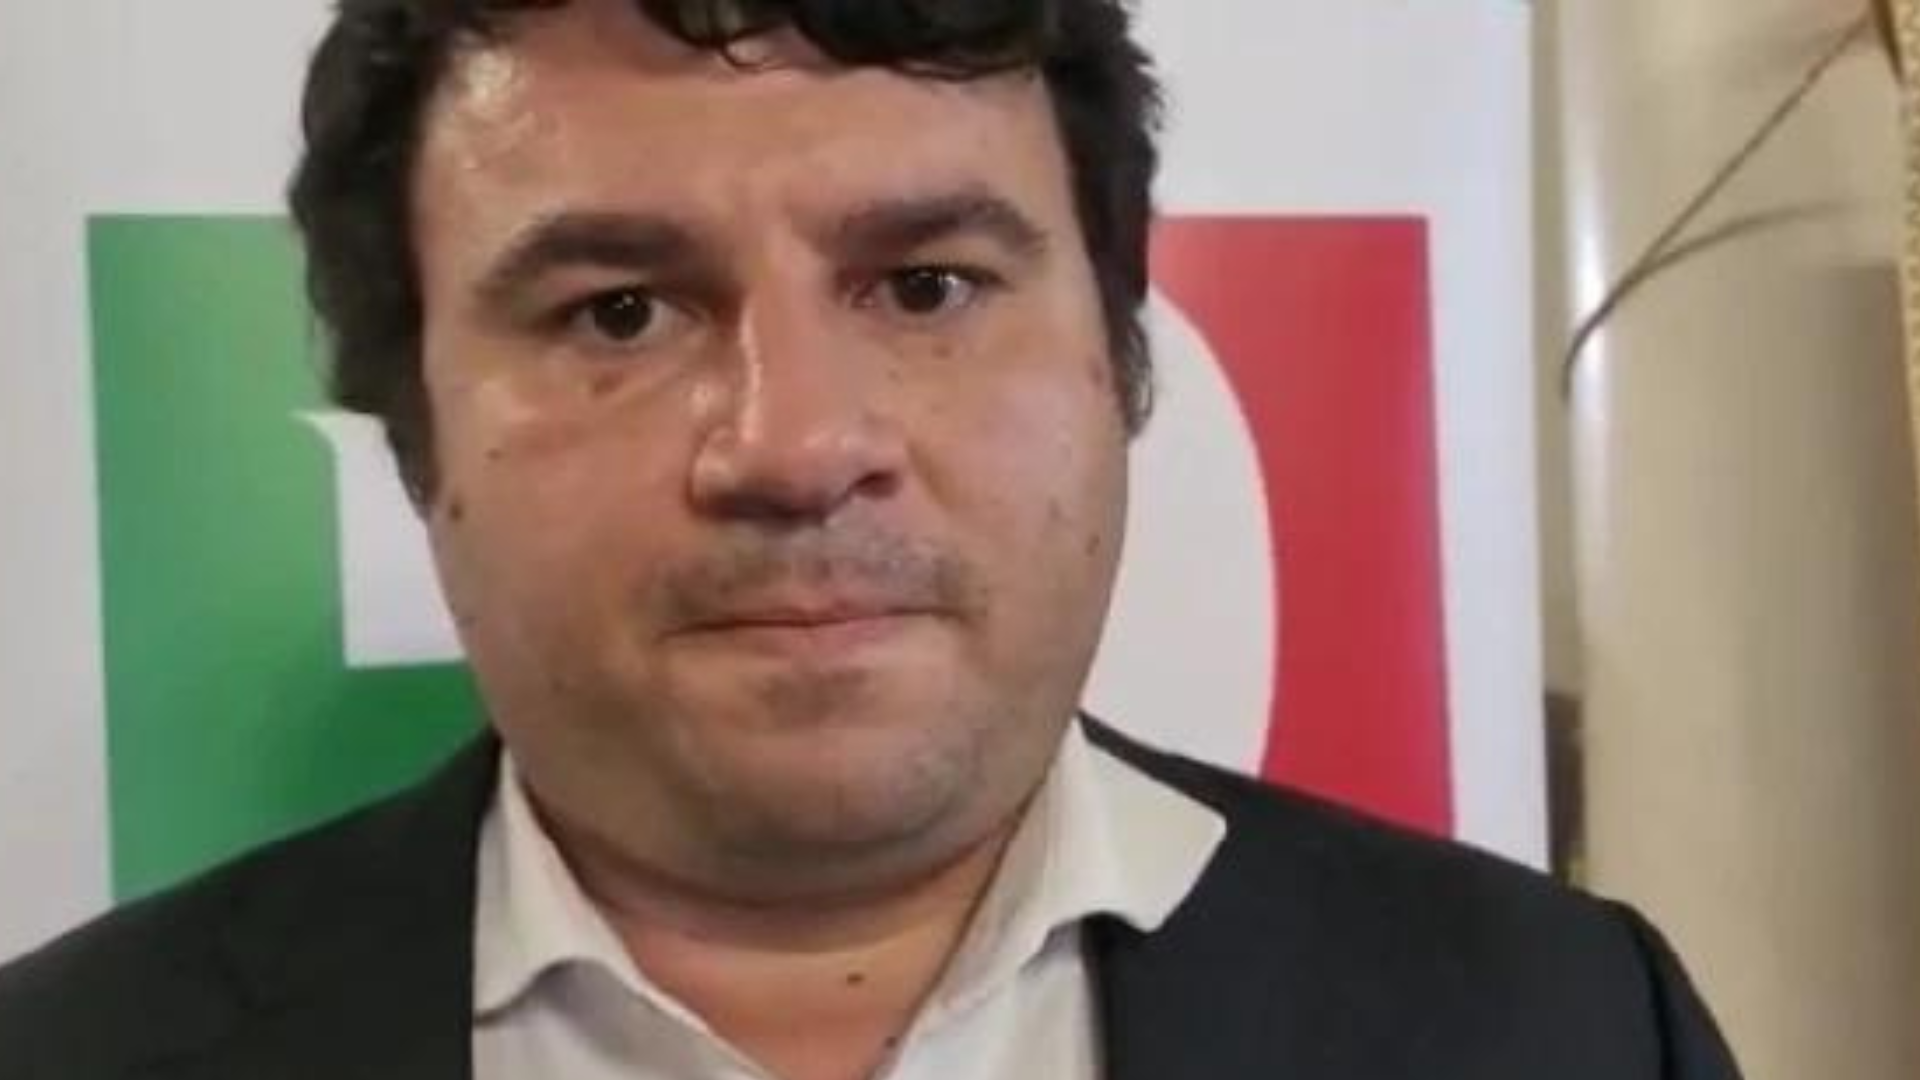 Emiliano Abramo rinuncia alla candidatura a sindaco di Catania<br>«Motivi familiari». I progressisti alla ricerca di un altro candidato